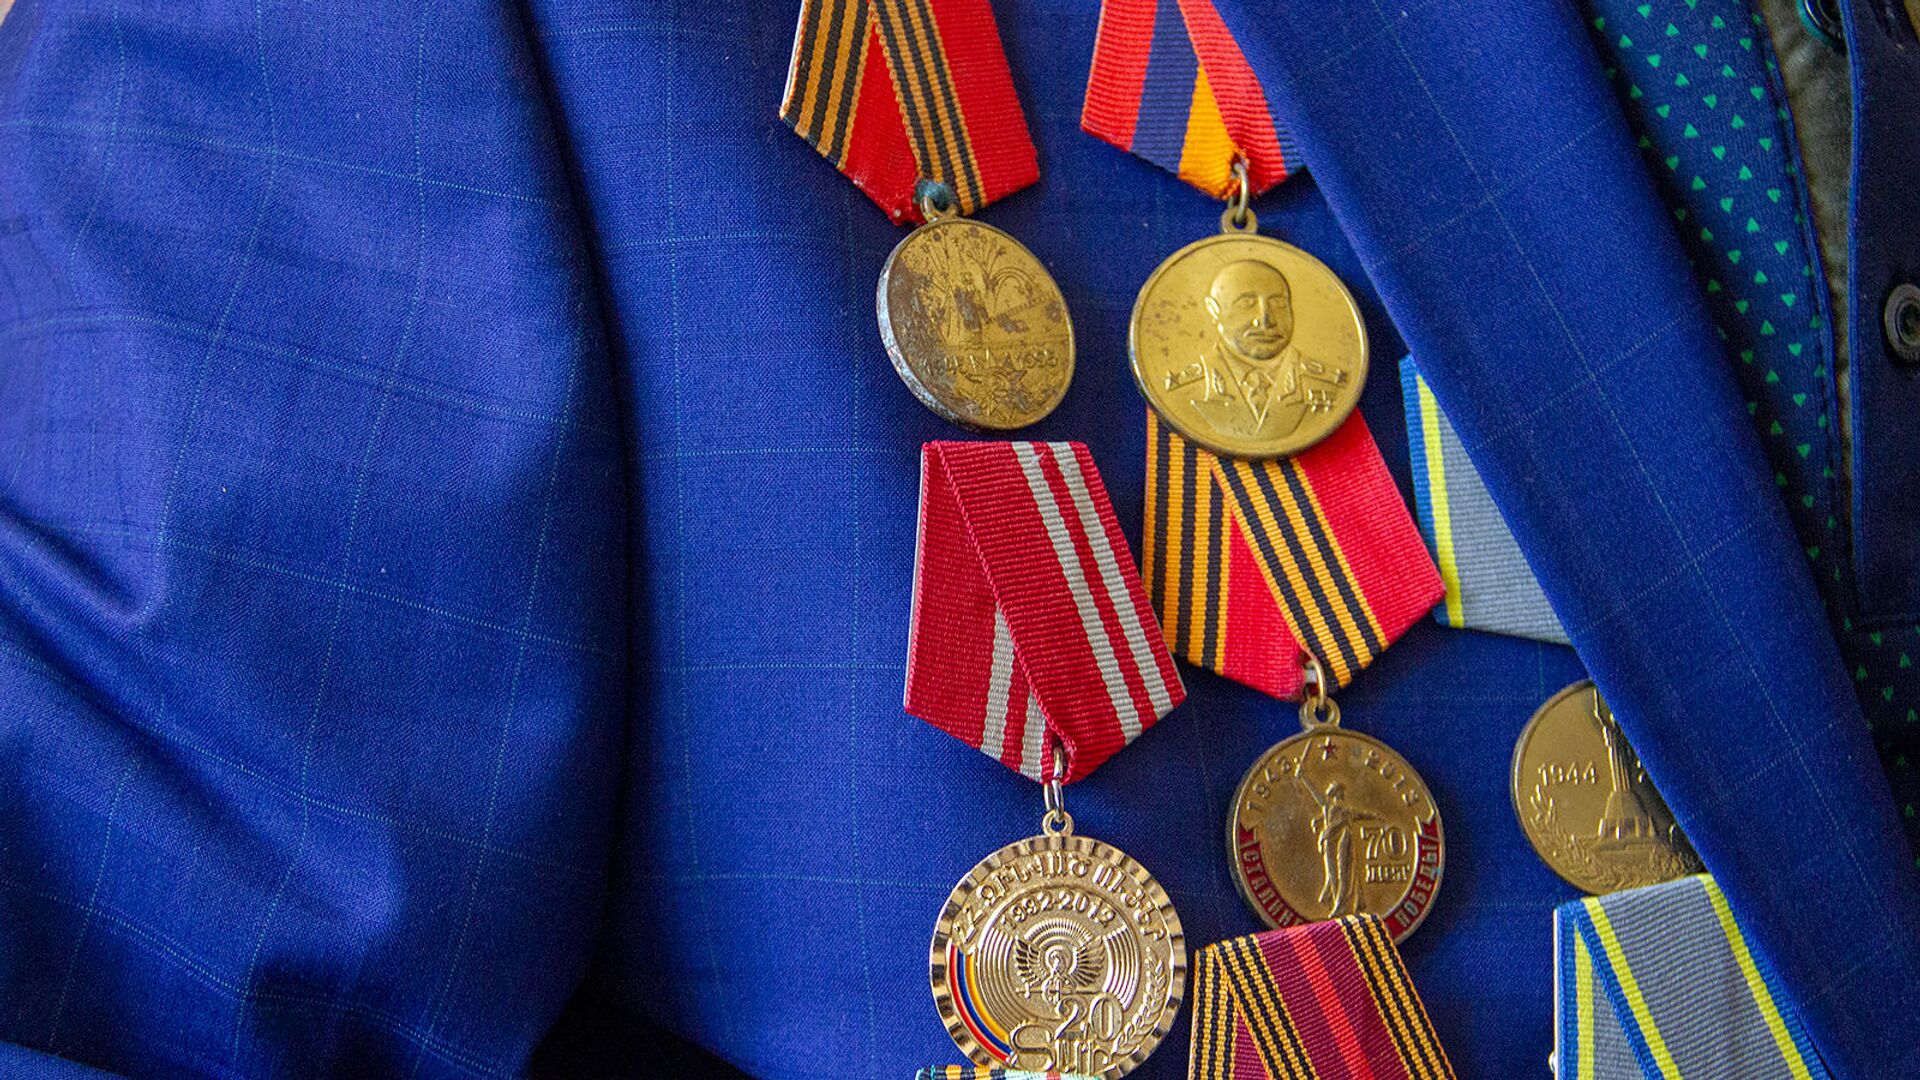 Медали ветерана Великой Отечественной войны, председатель Совета ветеранов Арташата Усика Паносяна - Sputnik Армения, 1920, 23.02.2021